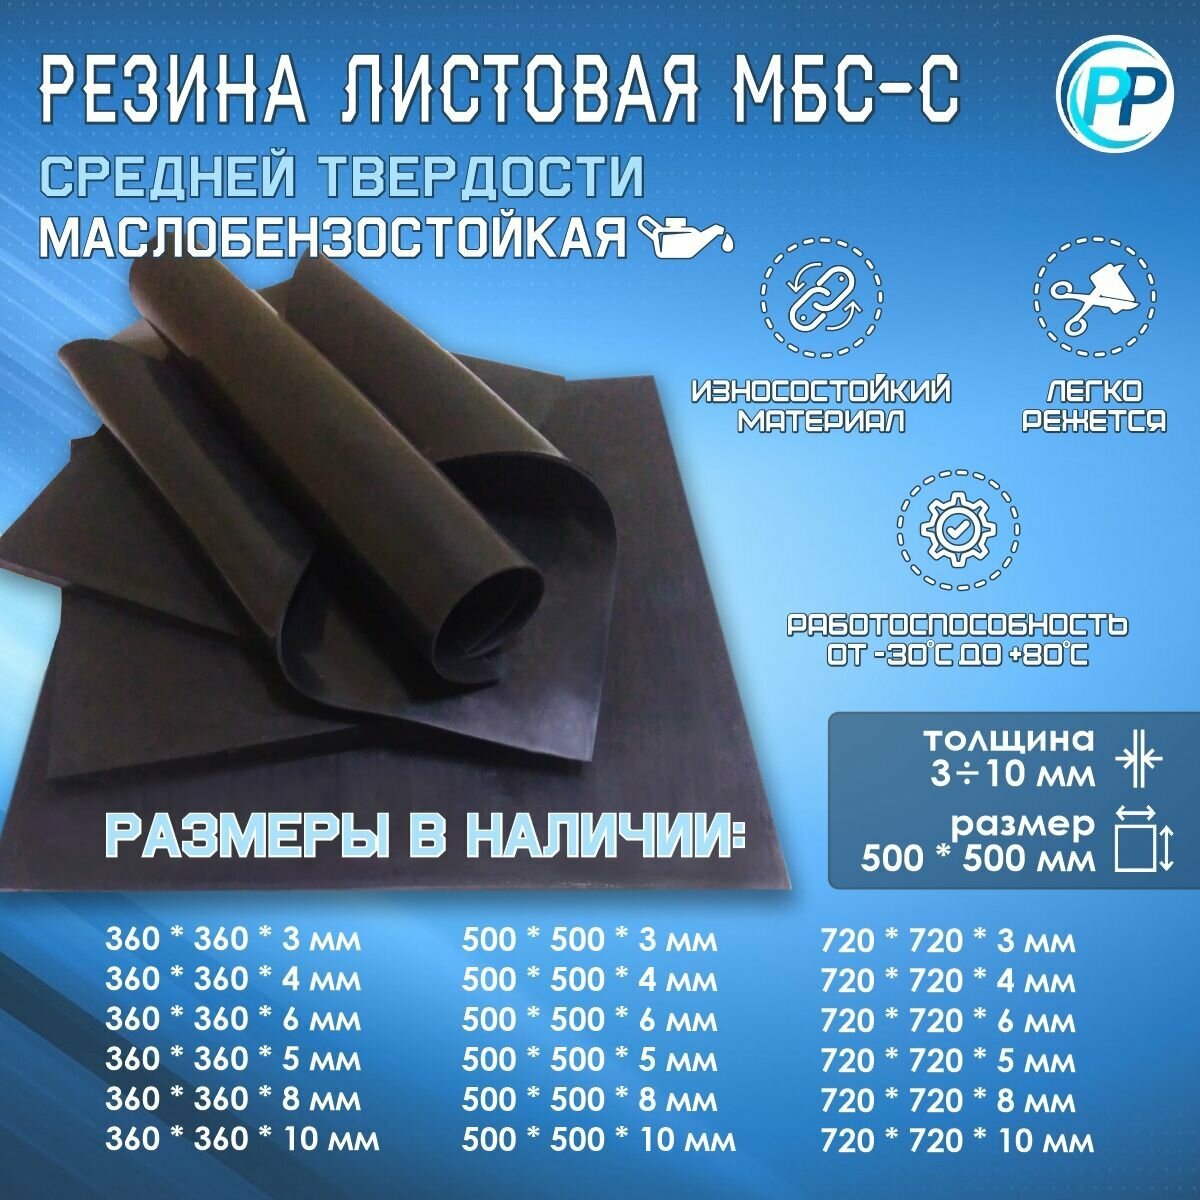 Резина листовая 2-ф 1 МБС (Маслобензостоикая) 10 мм 500х500 мм